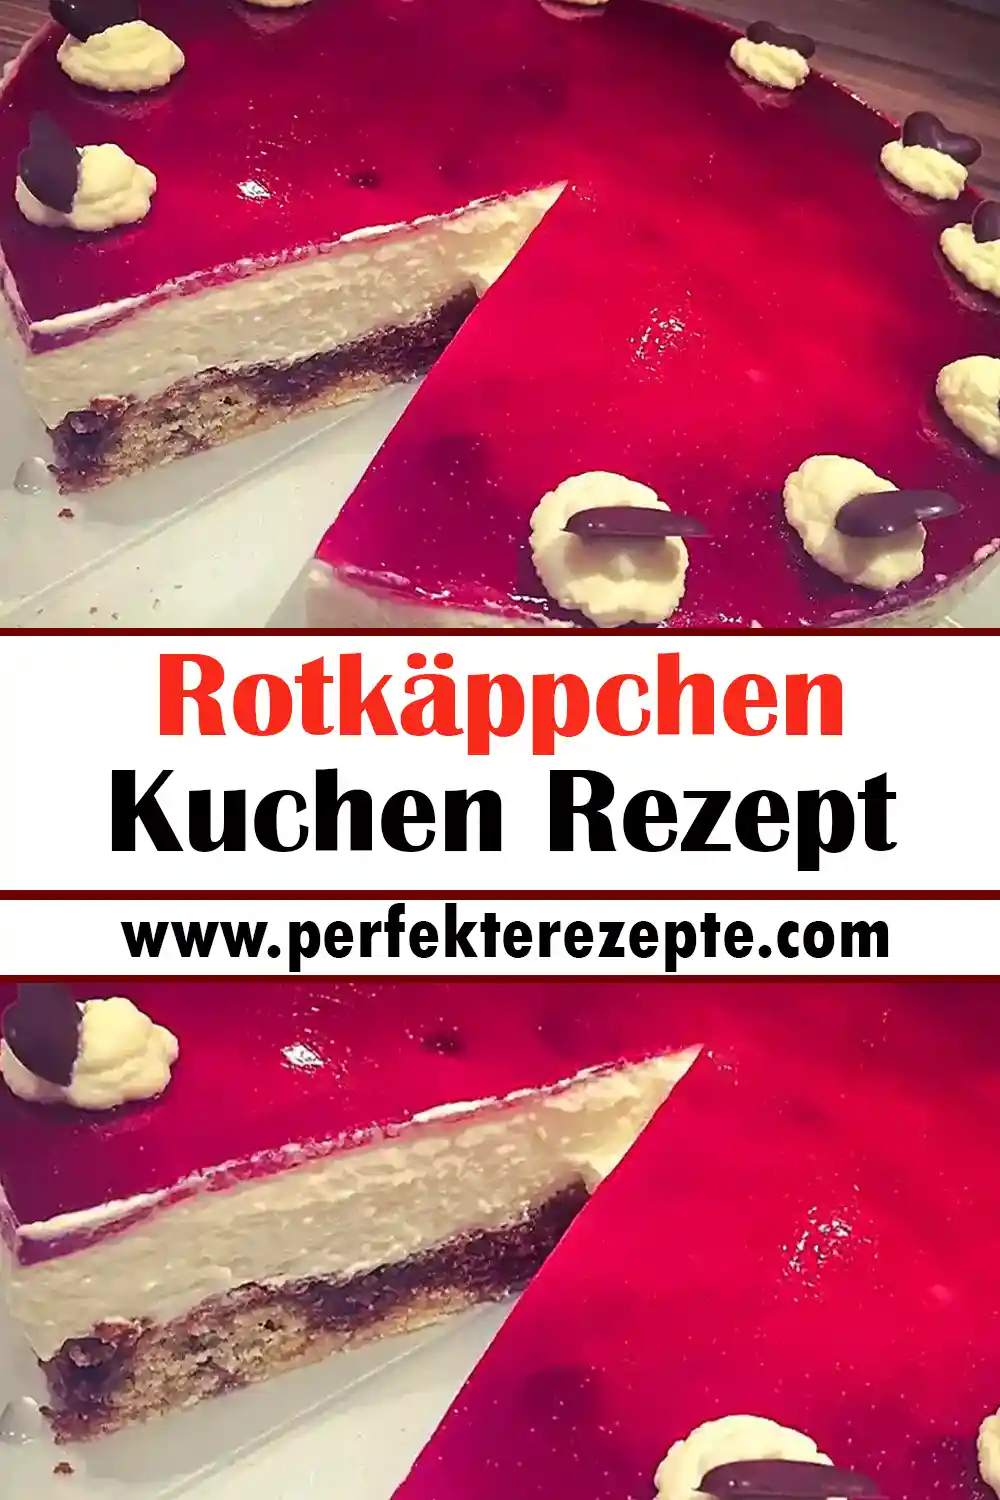 Rotkäppchen-Kuchen Rezept